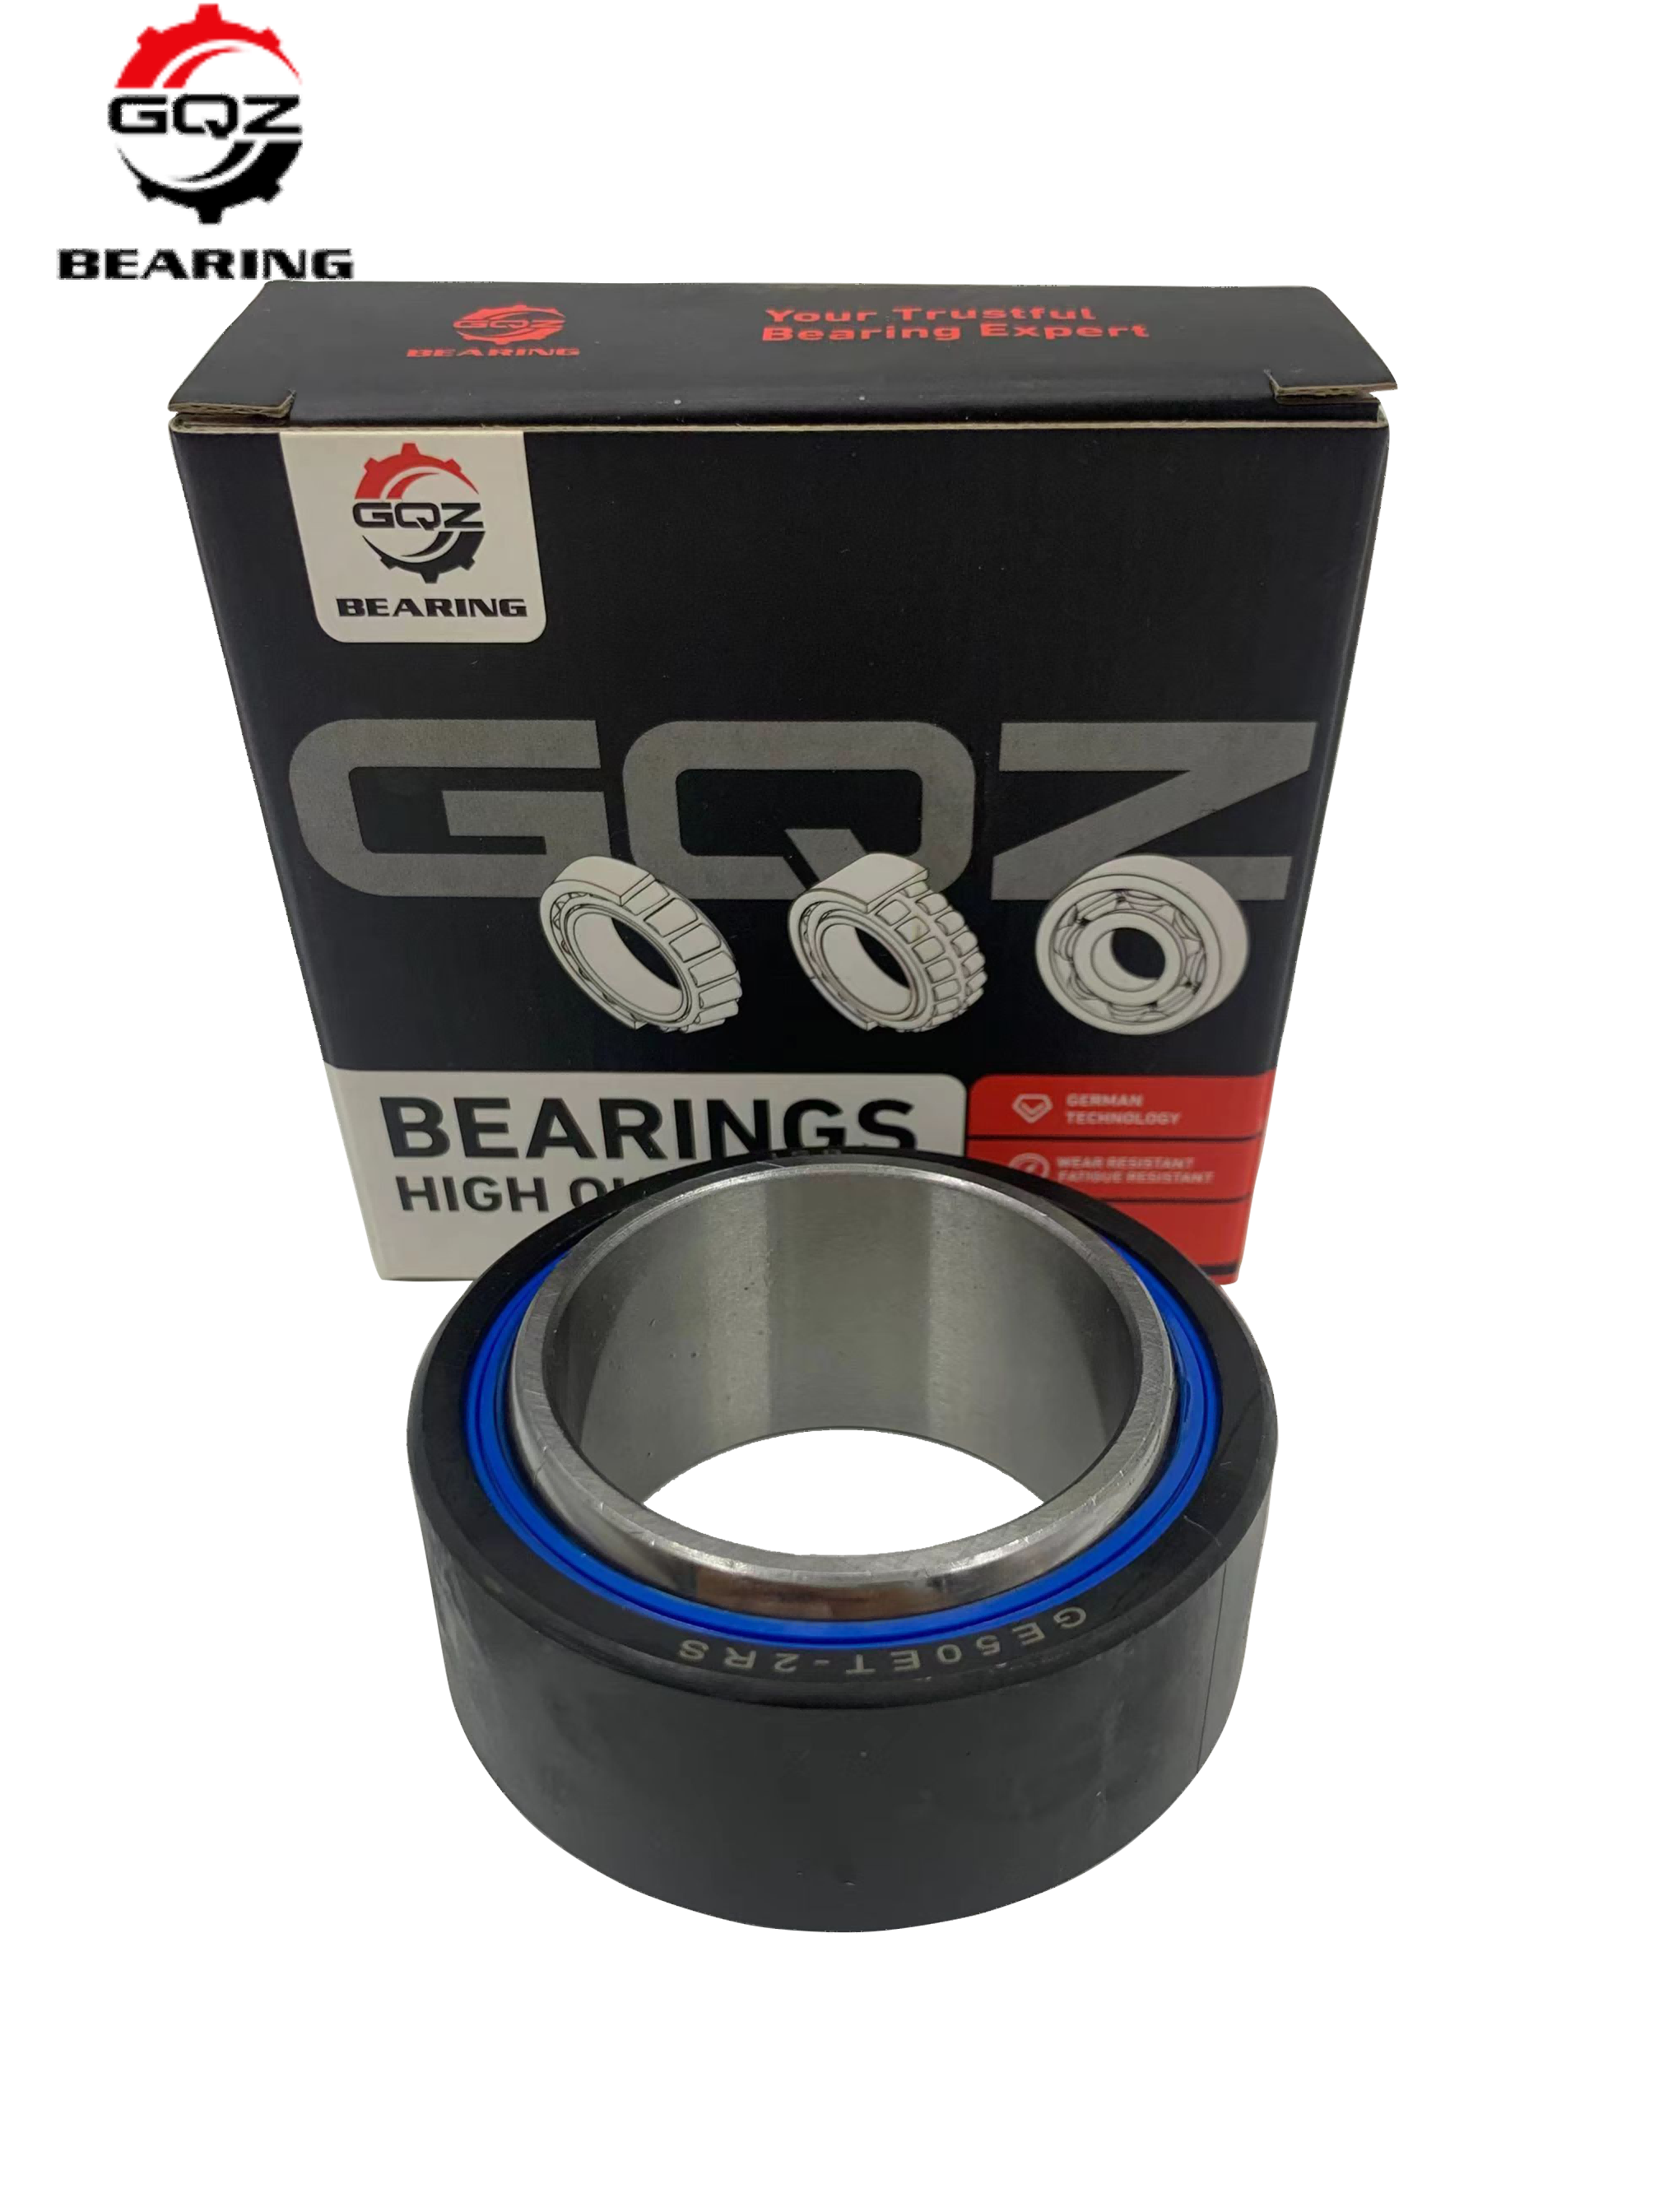 GE...FW Series bearing